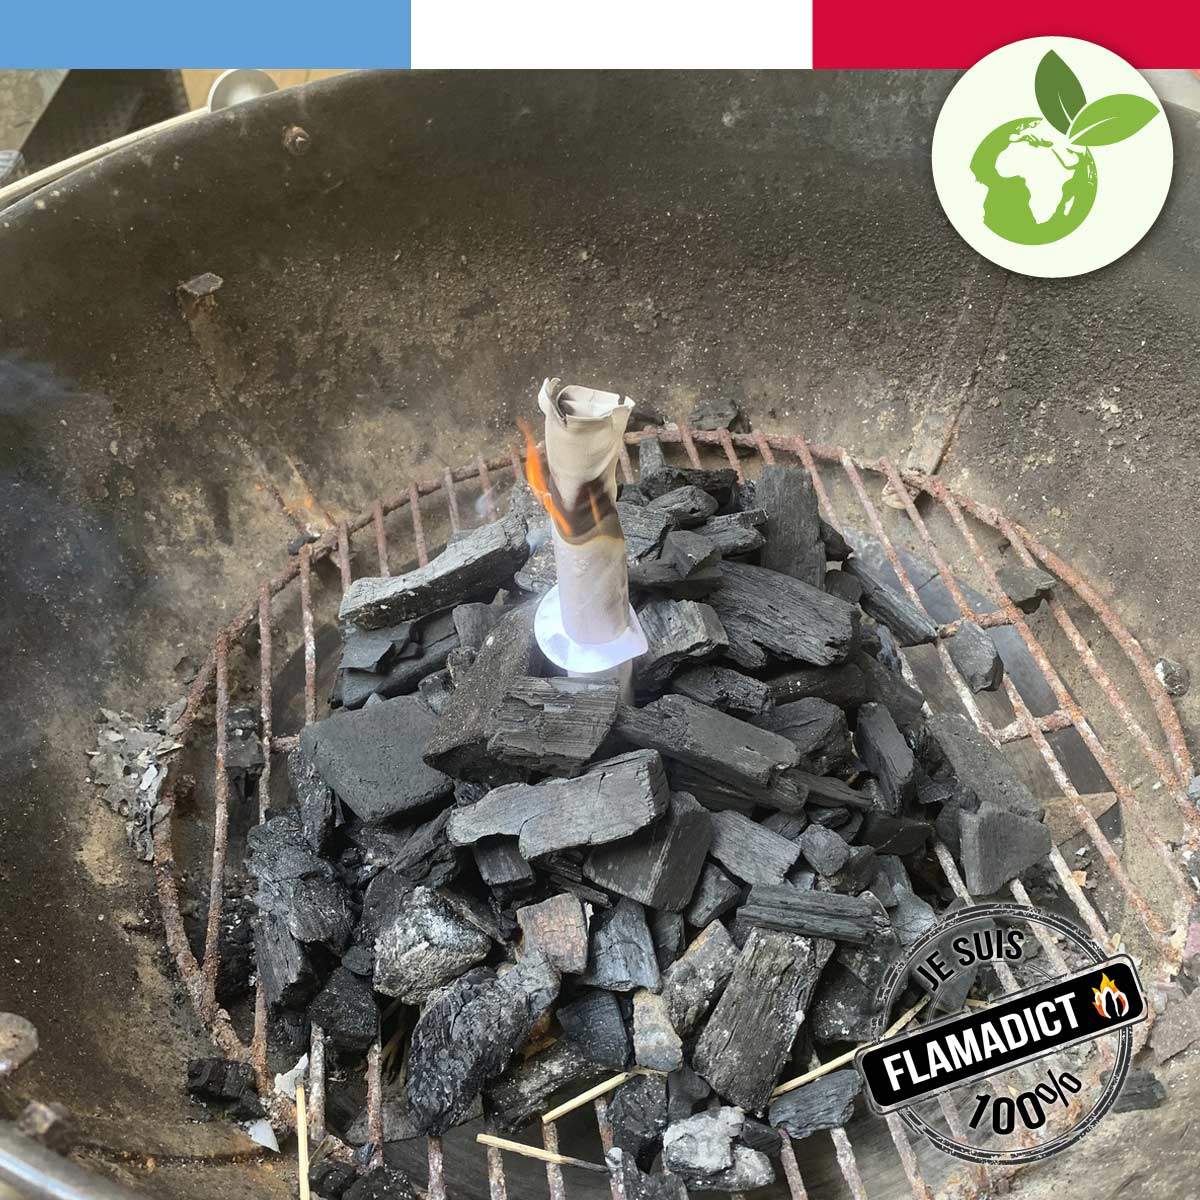 Produit écologique pour allumer feu de cheminée barbecue